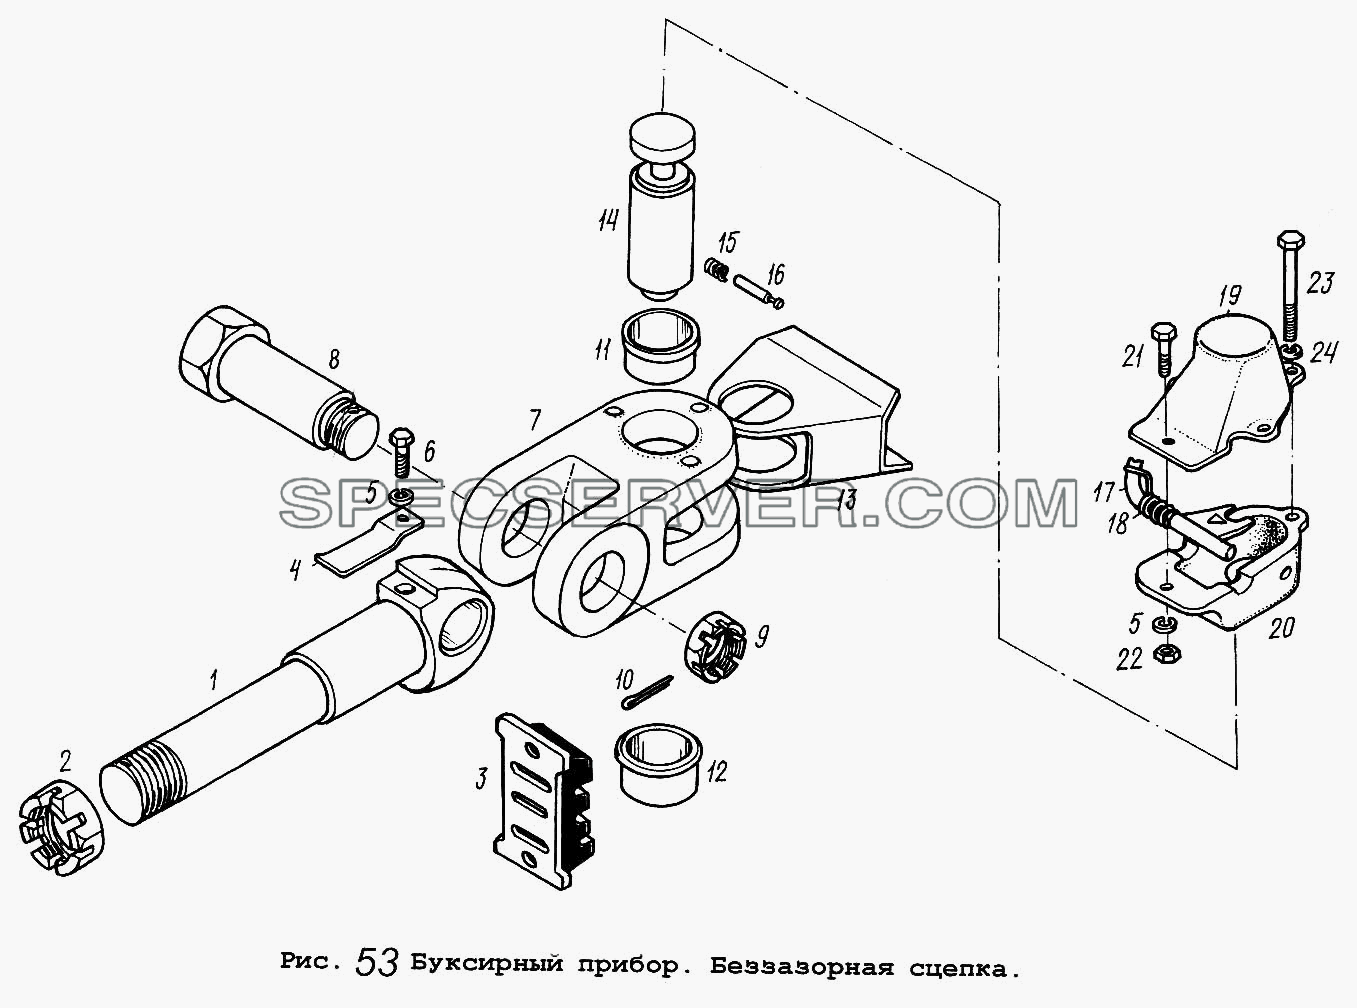 Буксирный прибор. Беззазорная сцепка для МАЗ-5516 (список запасных частей)